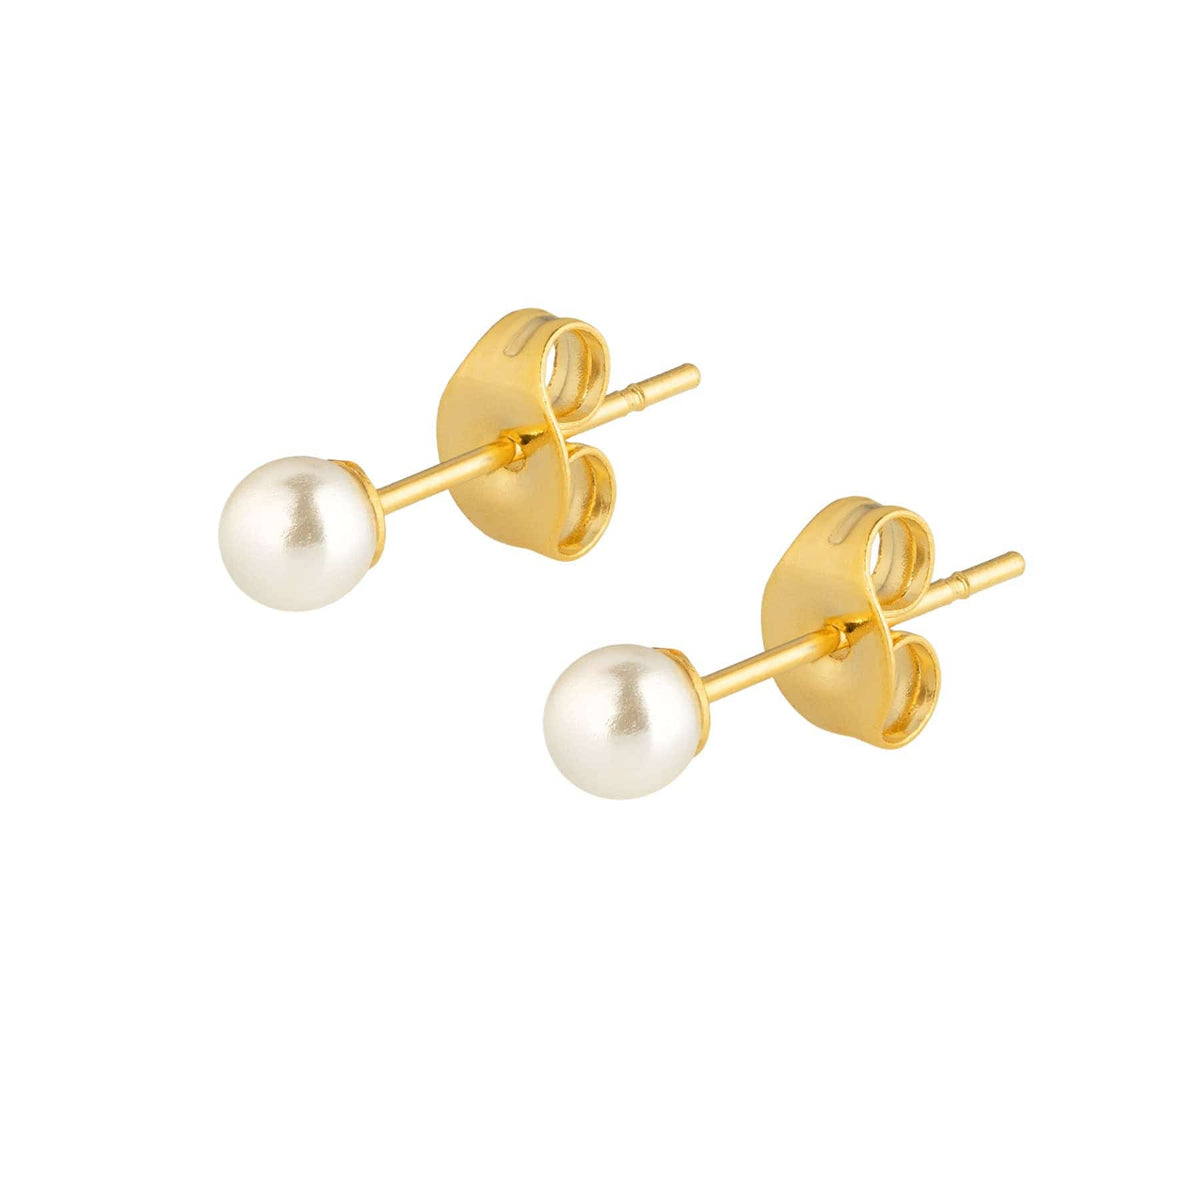 BohoMoon Stainless Steel Mini Pearl Stud Earrings Gold